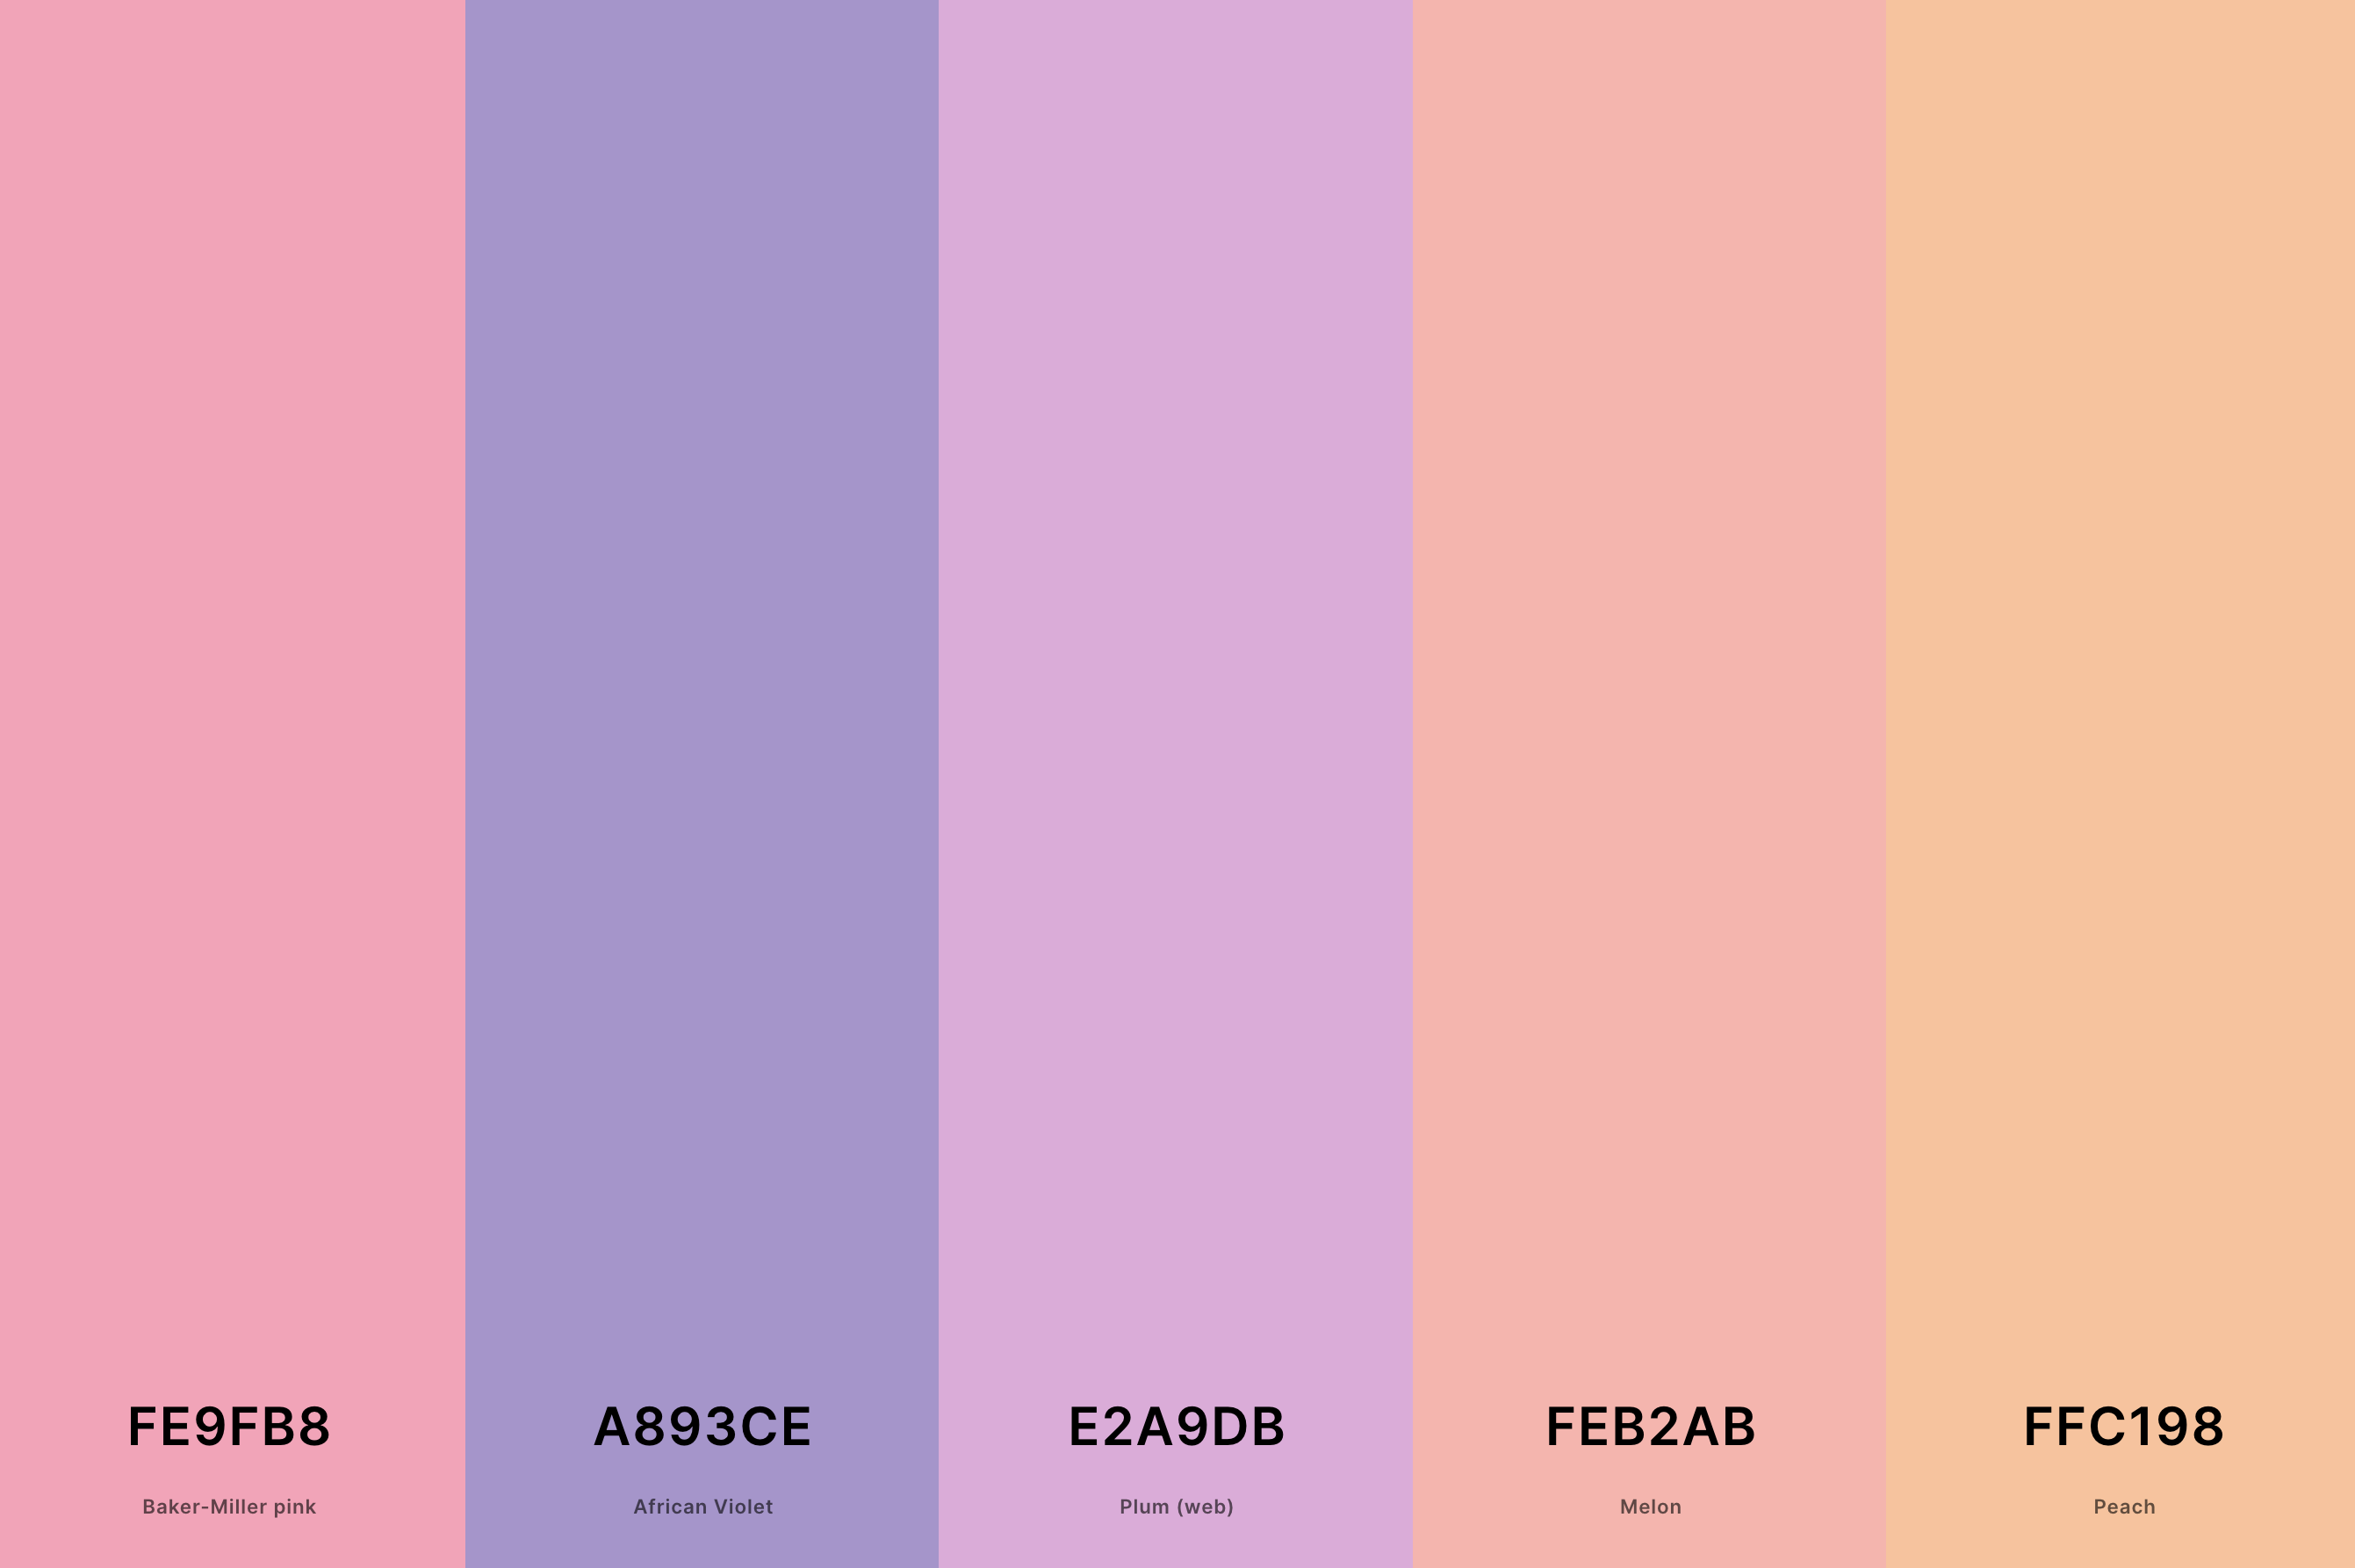 6. Pastel Sunset Color Palette Color Palette with Baker-Miller Pink (Hex #FE9FB8) + African Violet (Hex #A893CE) + Plum (Web) (Hex #E2A9DB) + Melon (Hex #FEB2AB) + Peach (Hex #FFC198) Color Palette with Hex Codes